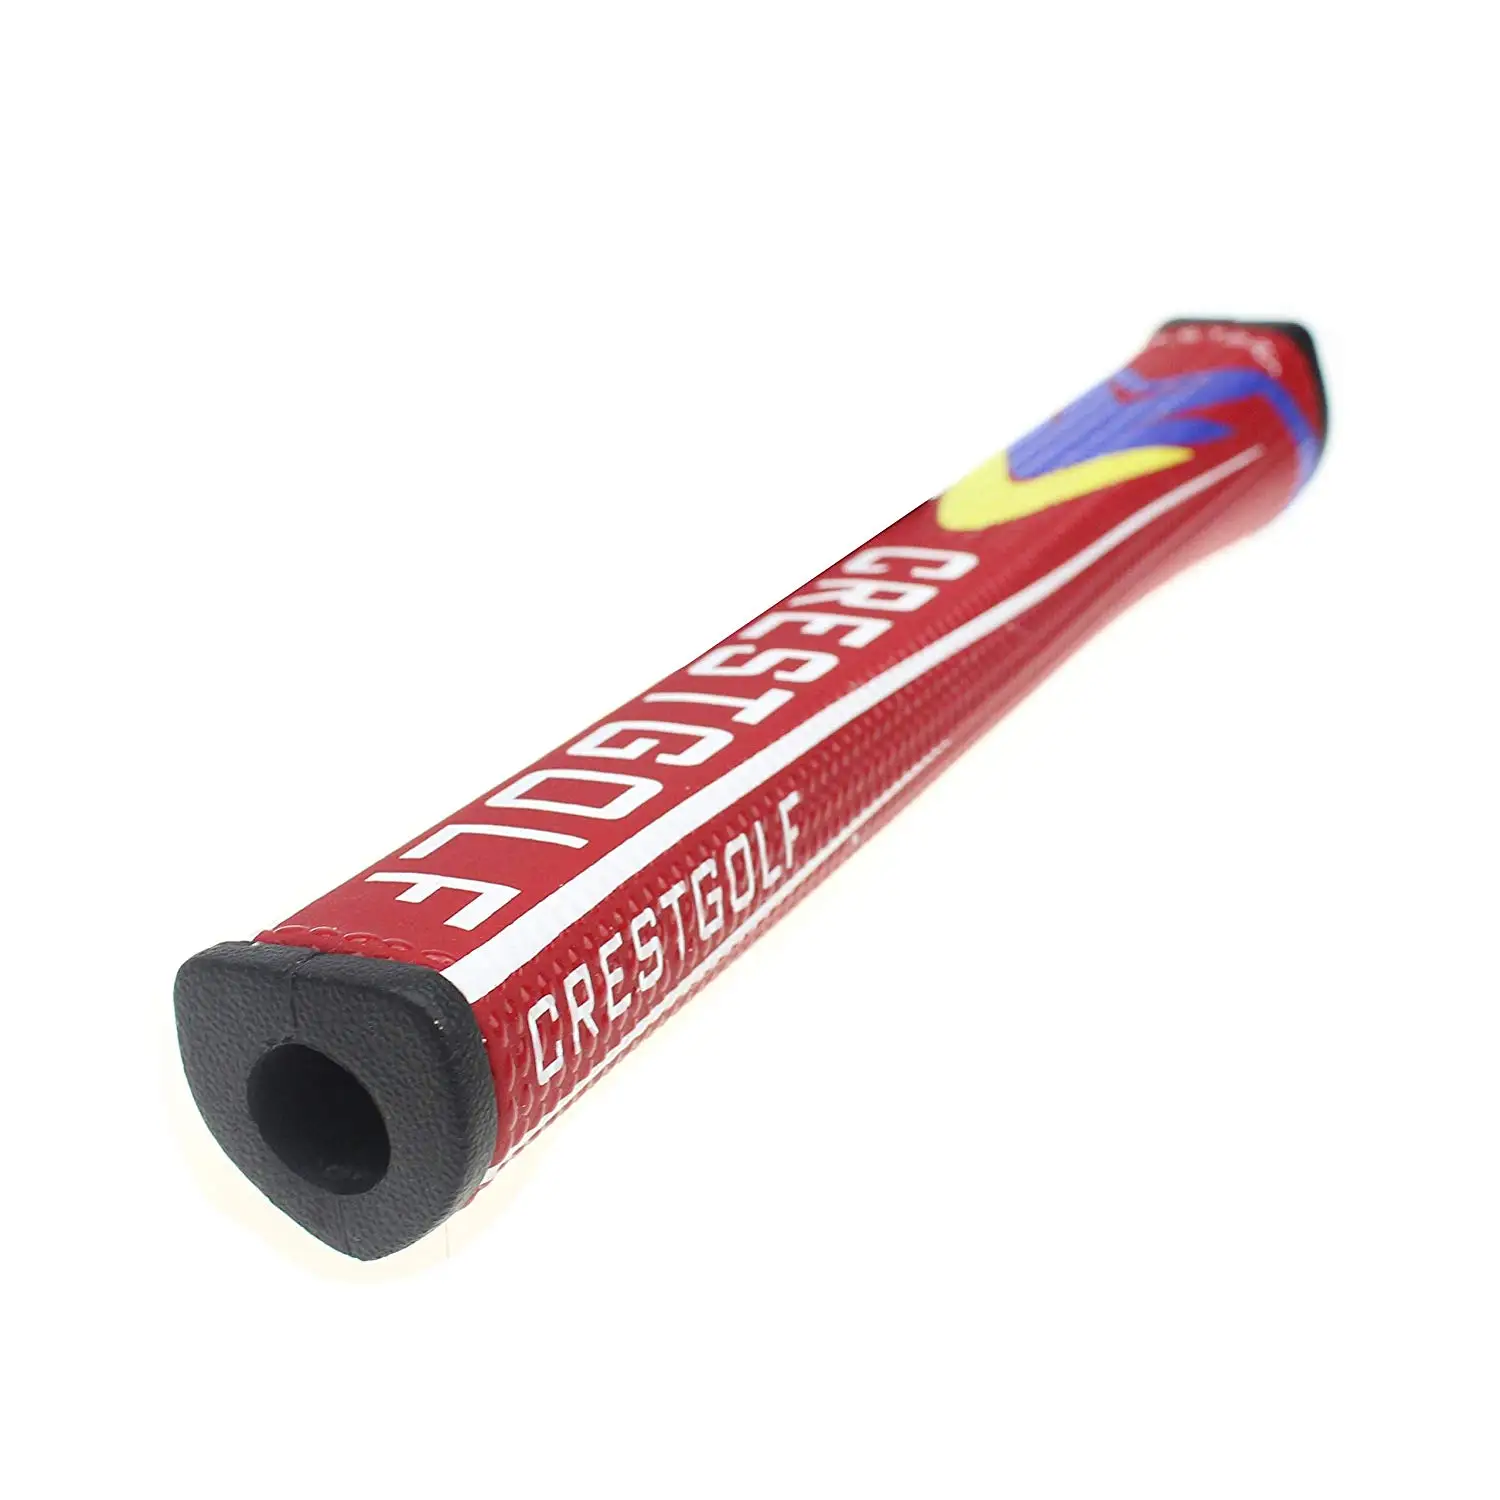 Cil golf Putter Grips среднего размера противоскользящая Легкая ручка для гольфа, более амортизация, сильный толчок(красный) ручка для гольфа s